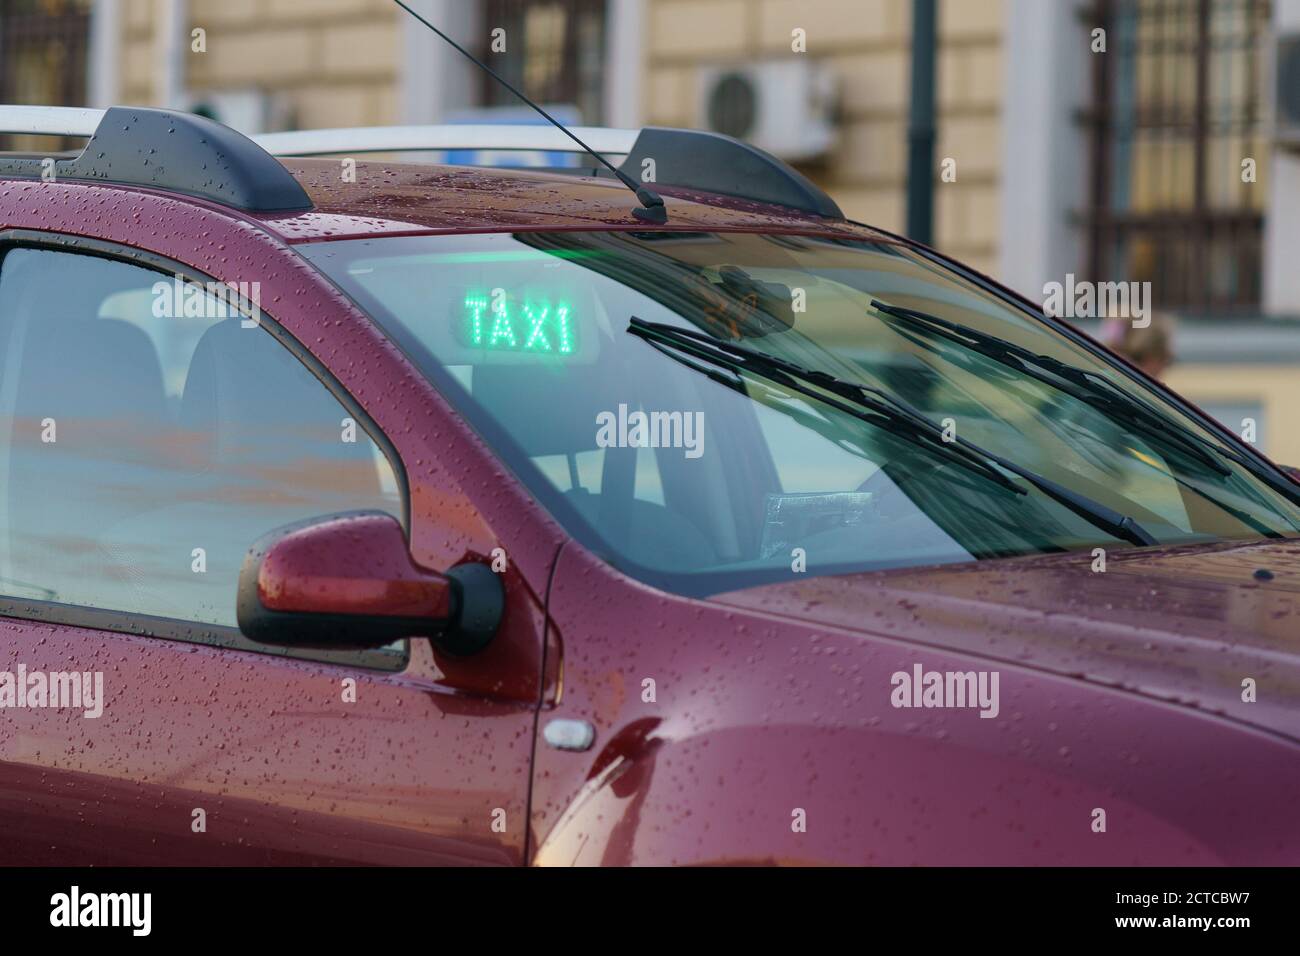 Fotografia del moderno taxi cittadino di colore viola nel giorno d'autunno a Mosca. Immagine con sfondo sfocato. Tema dei trasporti pubblici. Frontale Foto Stock